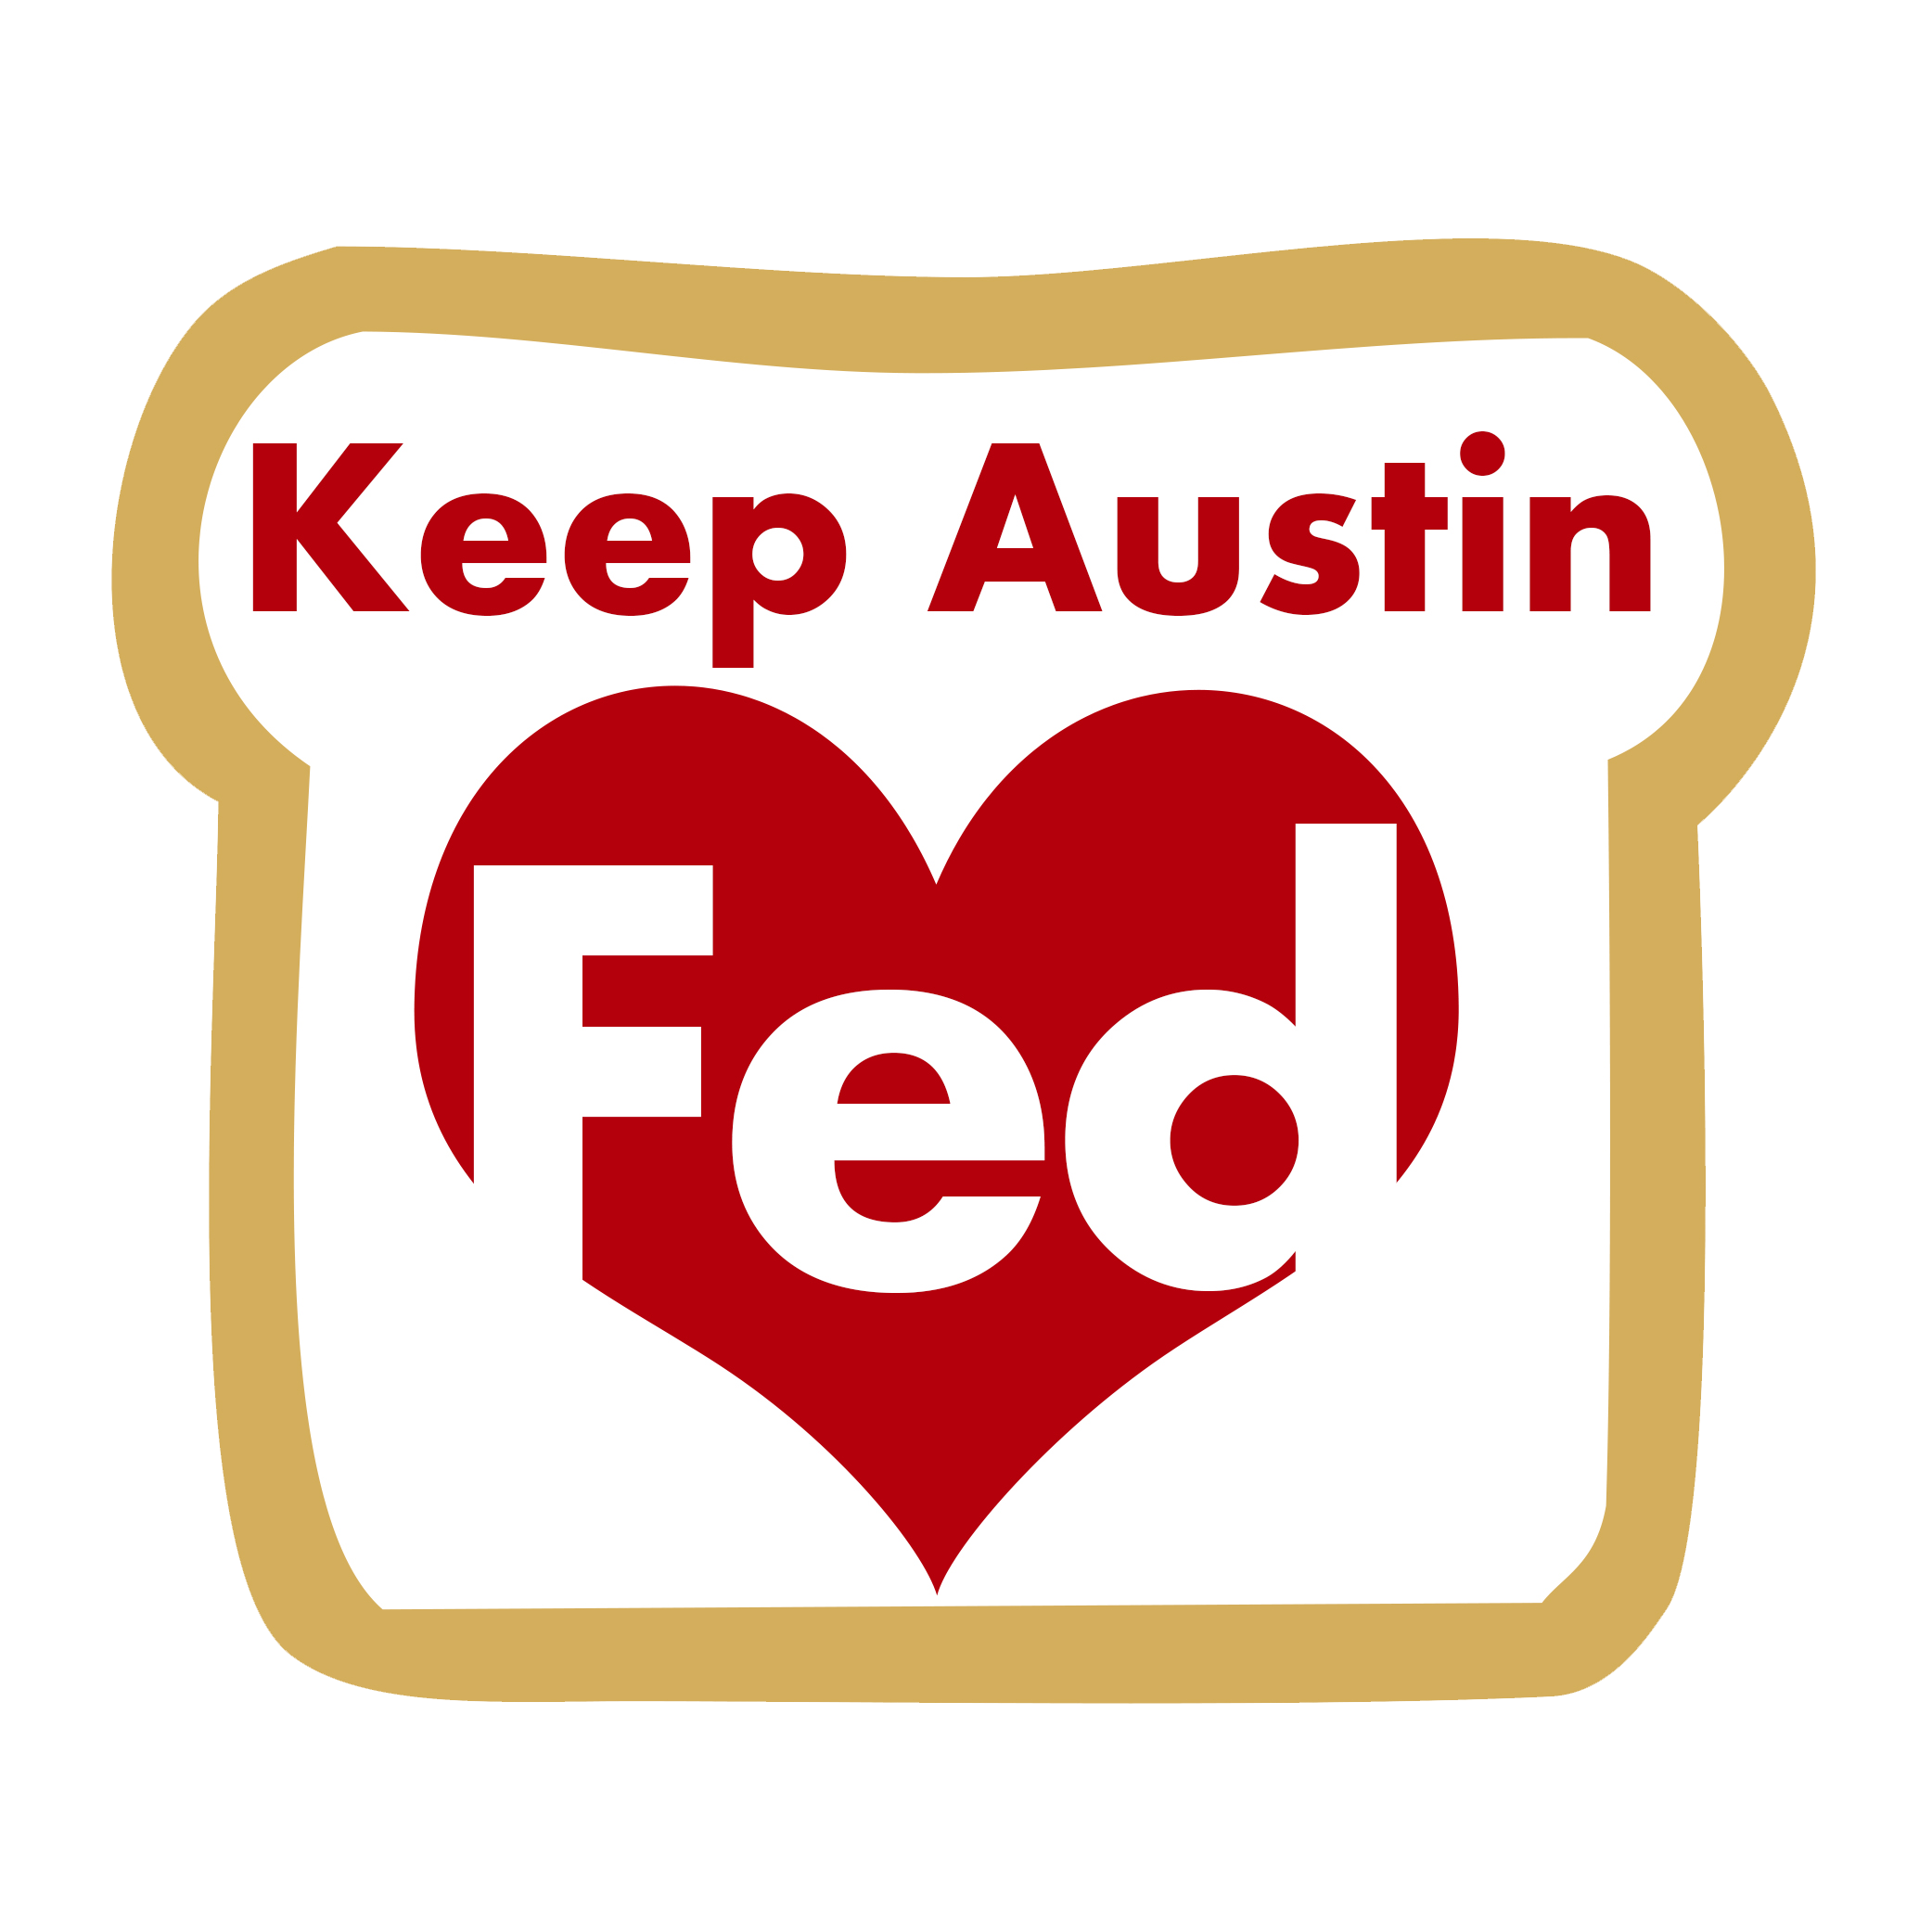 Keep Austin Fed